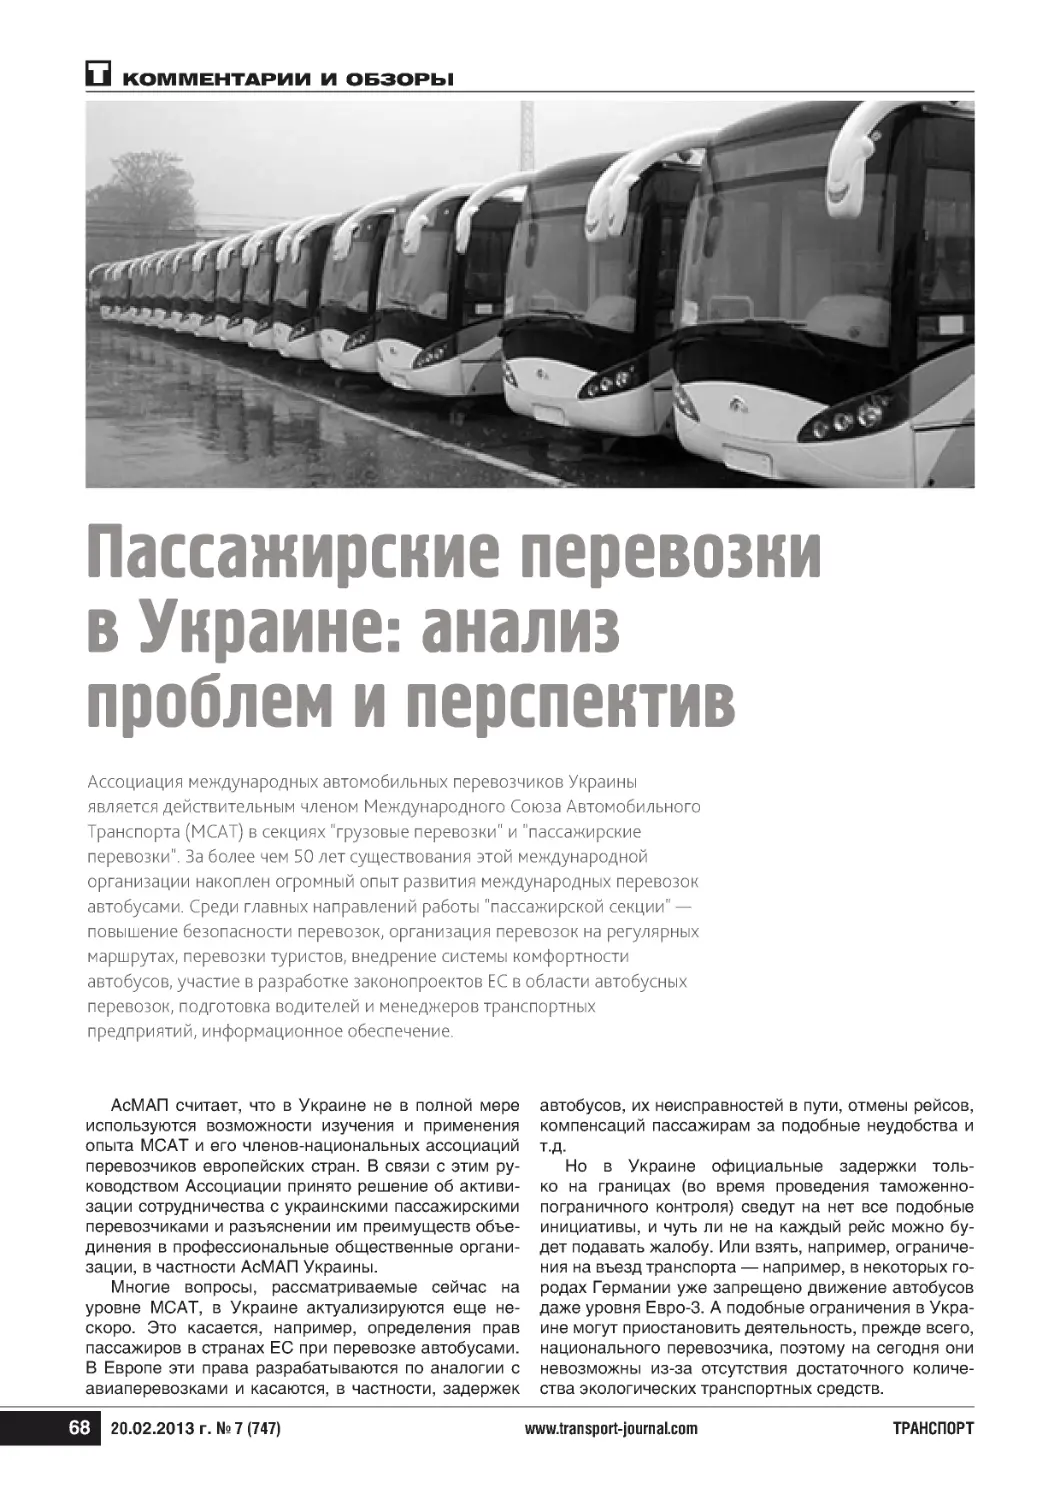 Пассажирские перевозкив Украине: анализпроблем и перспектив